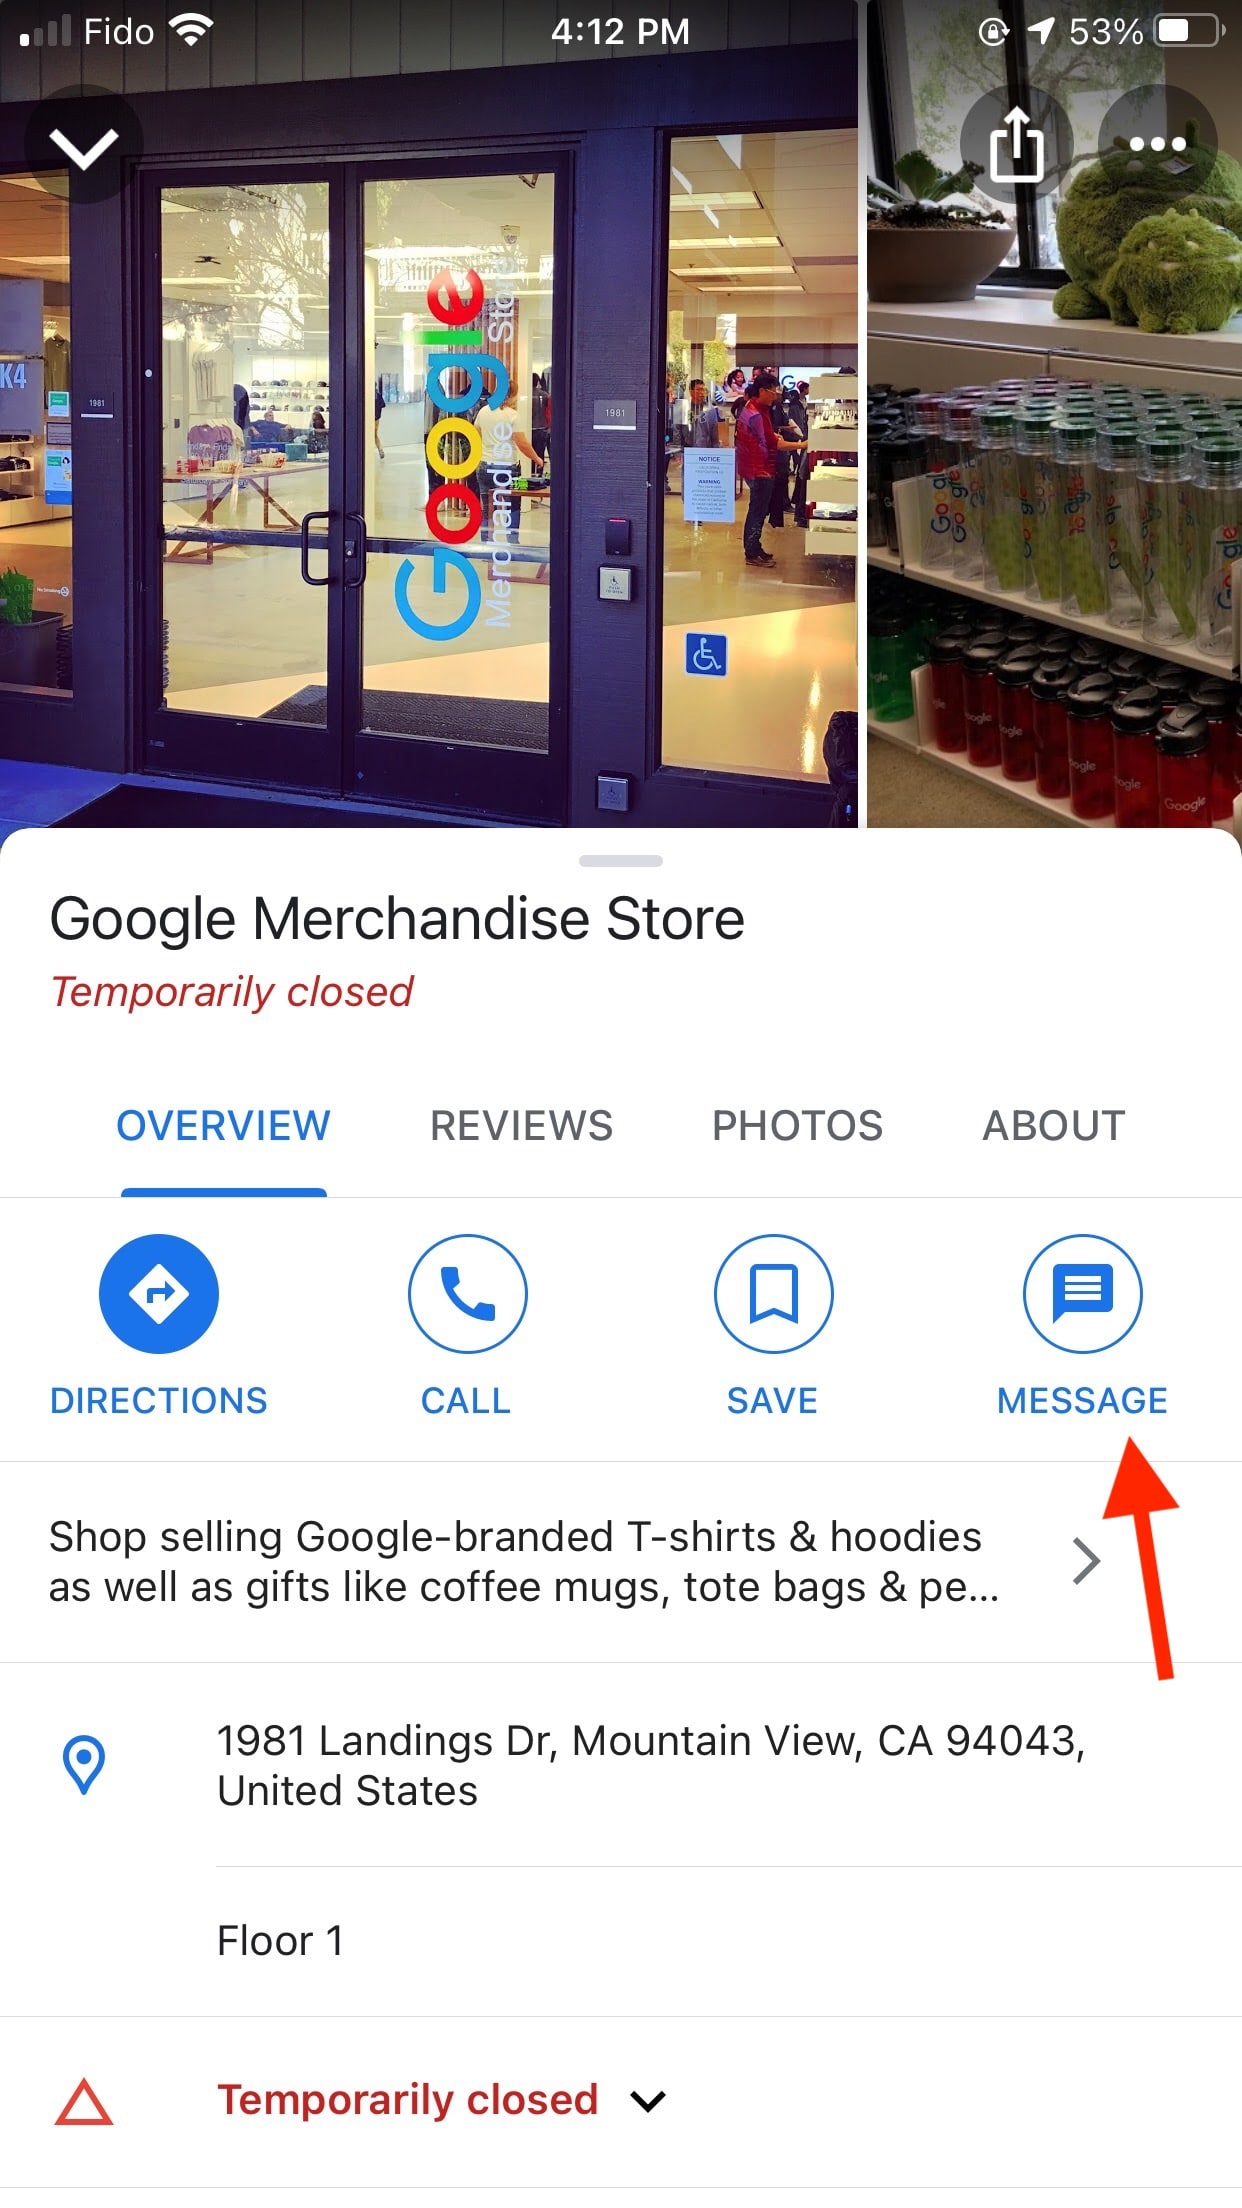 Bouton de message Google Merchandise Store